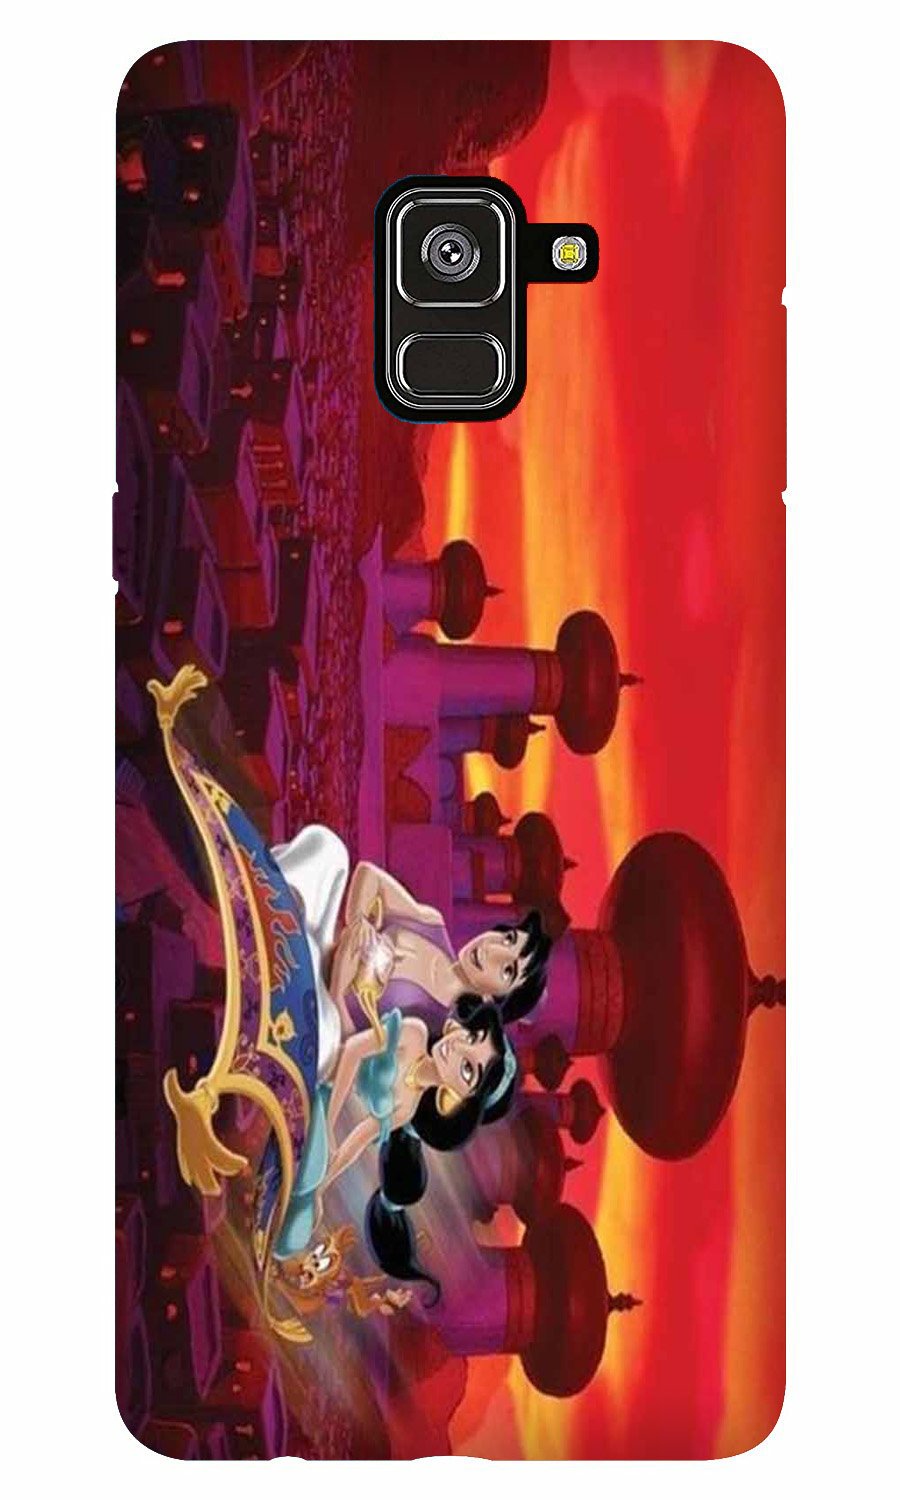 Aladdin Mobile Back Case for Galaxy A5 (2018) (Design - 345)